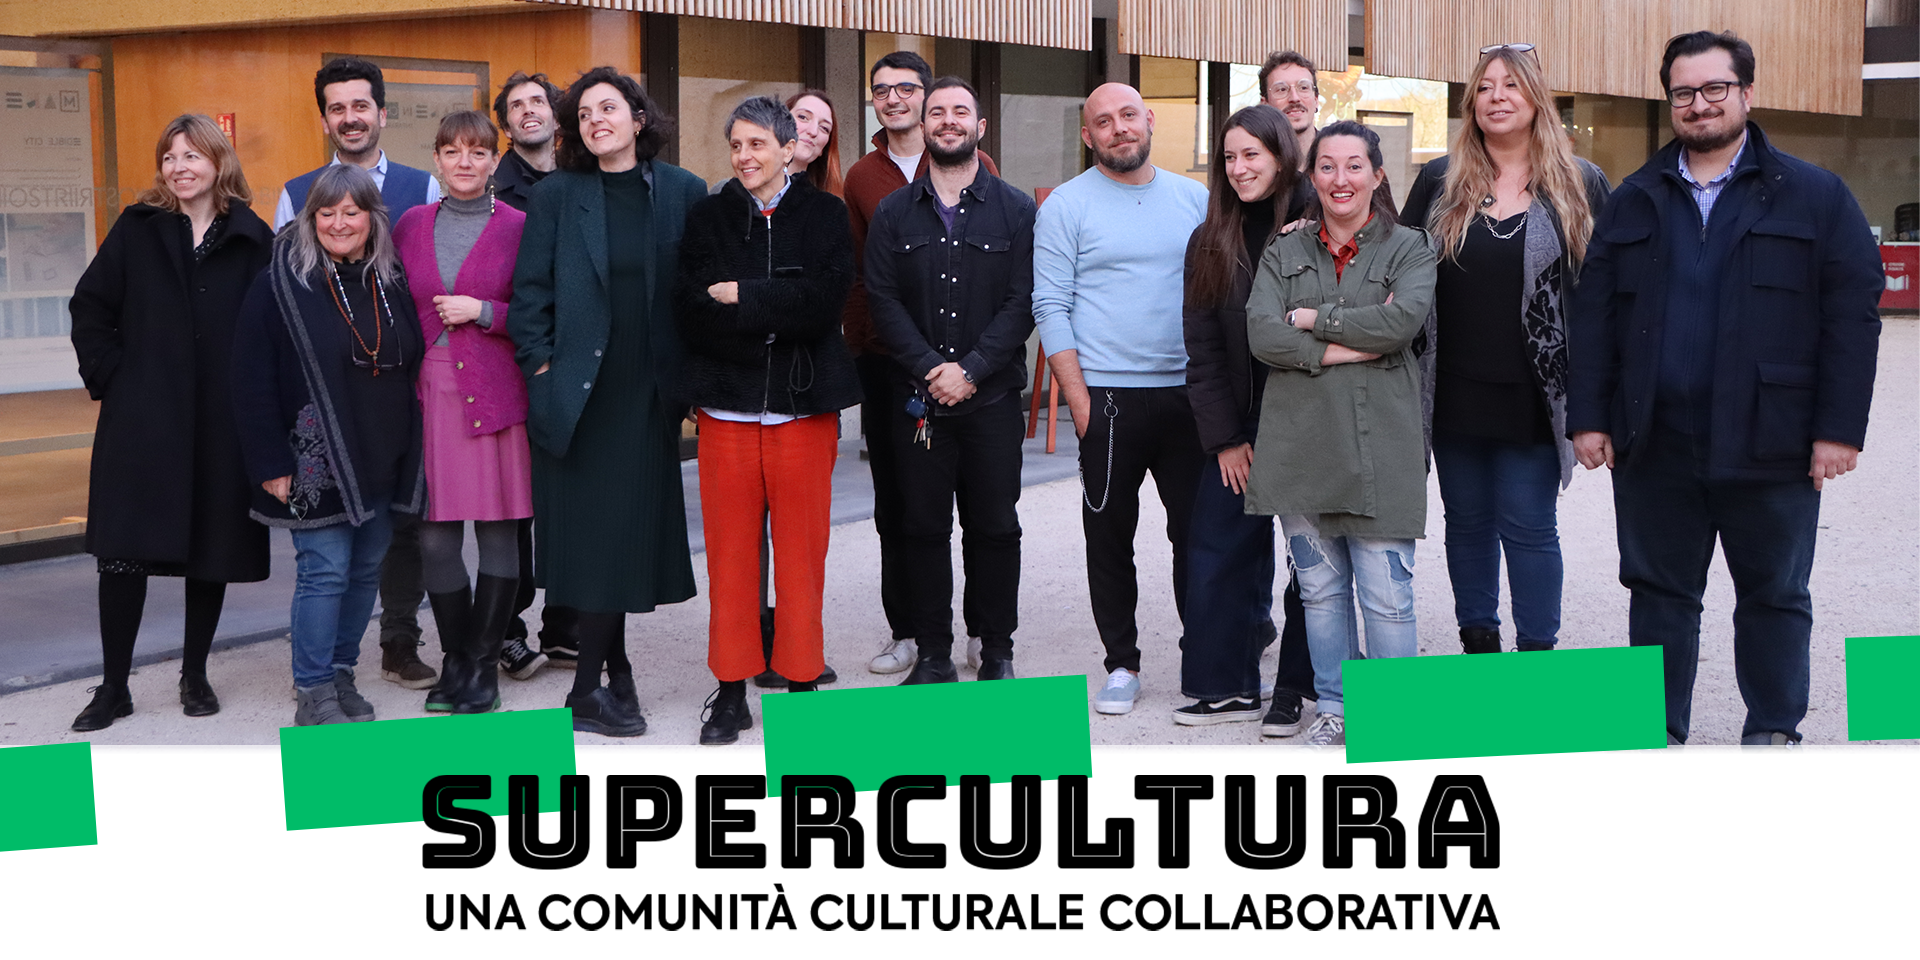 Supercultura: verso una comunità culturale collaborativa